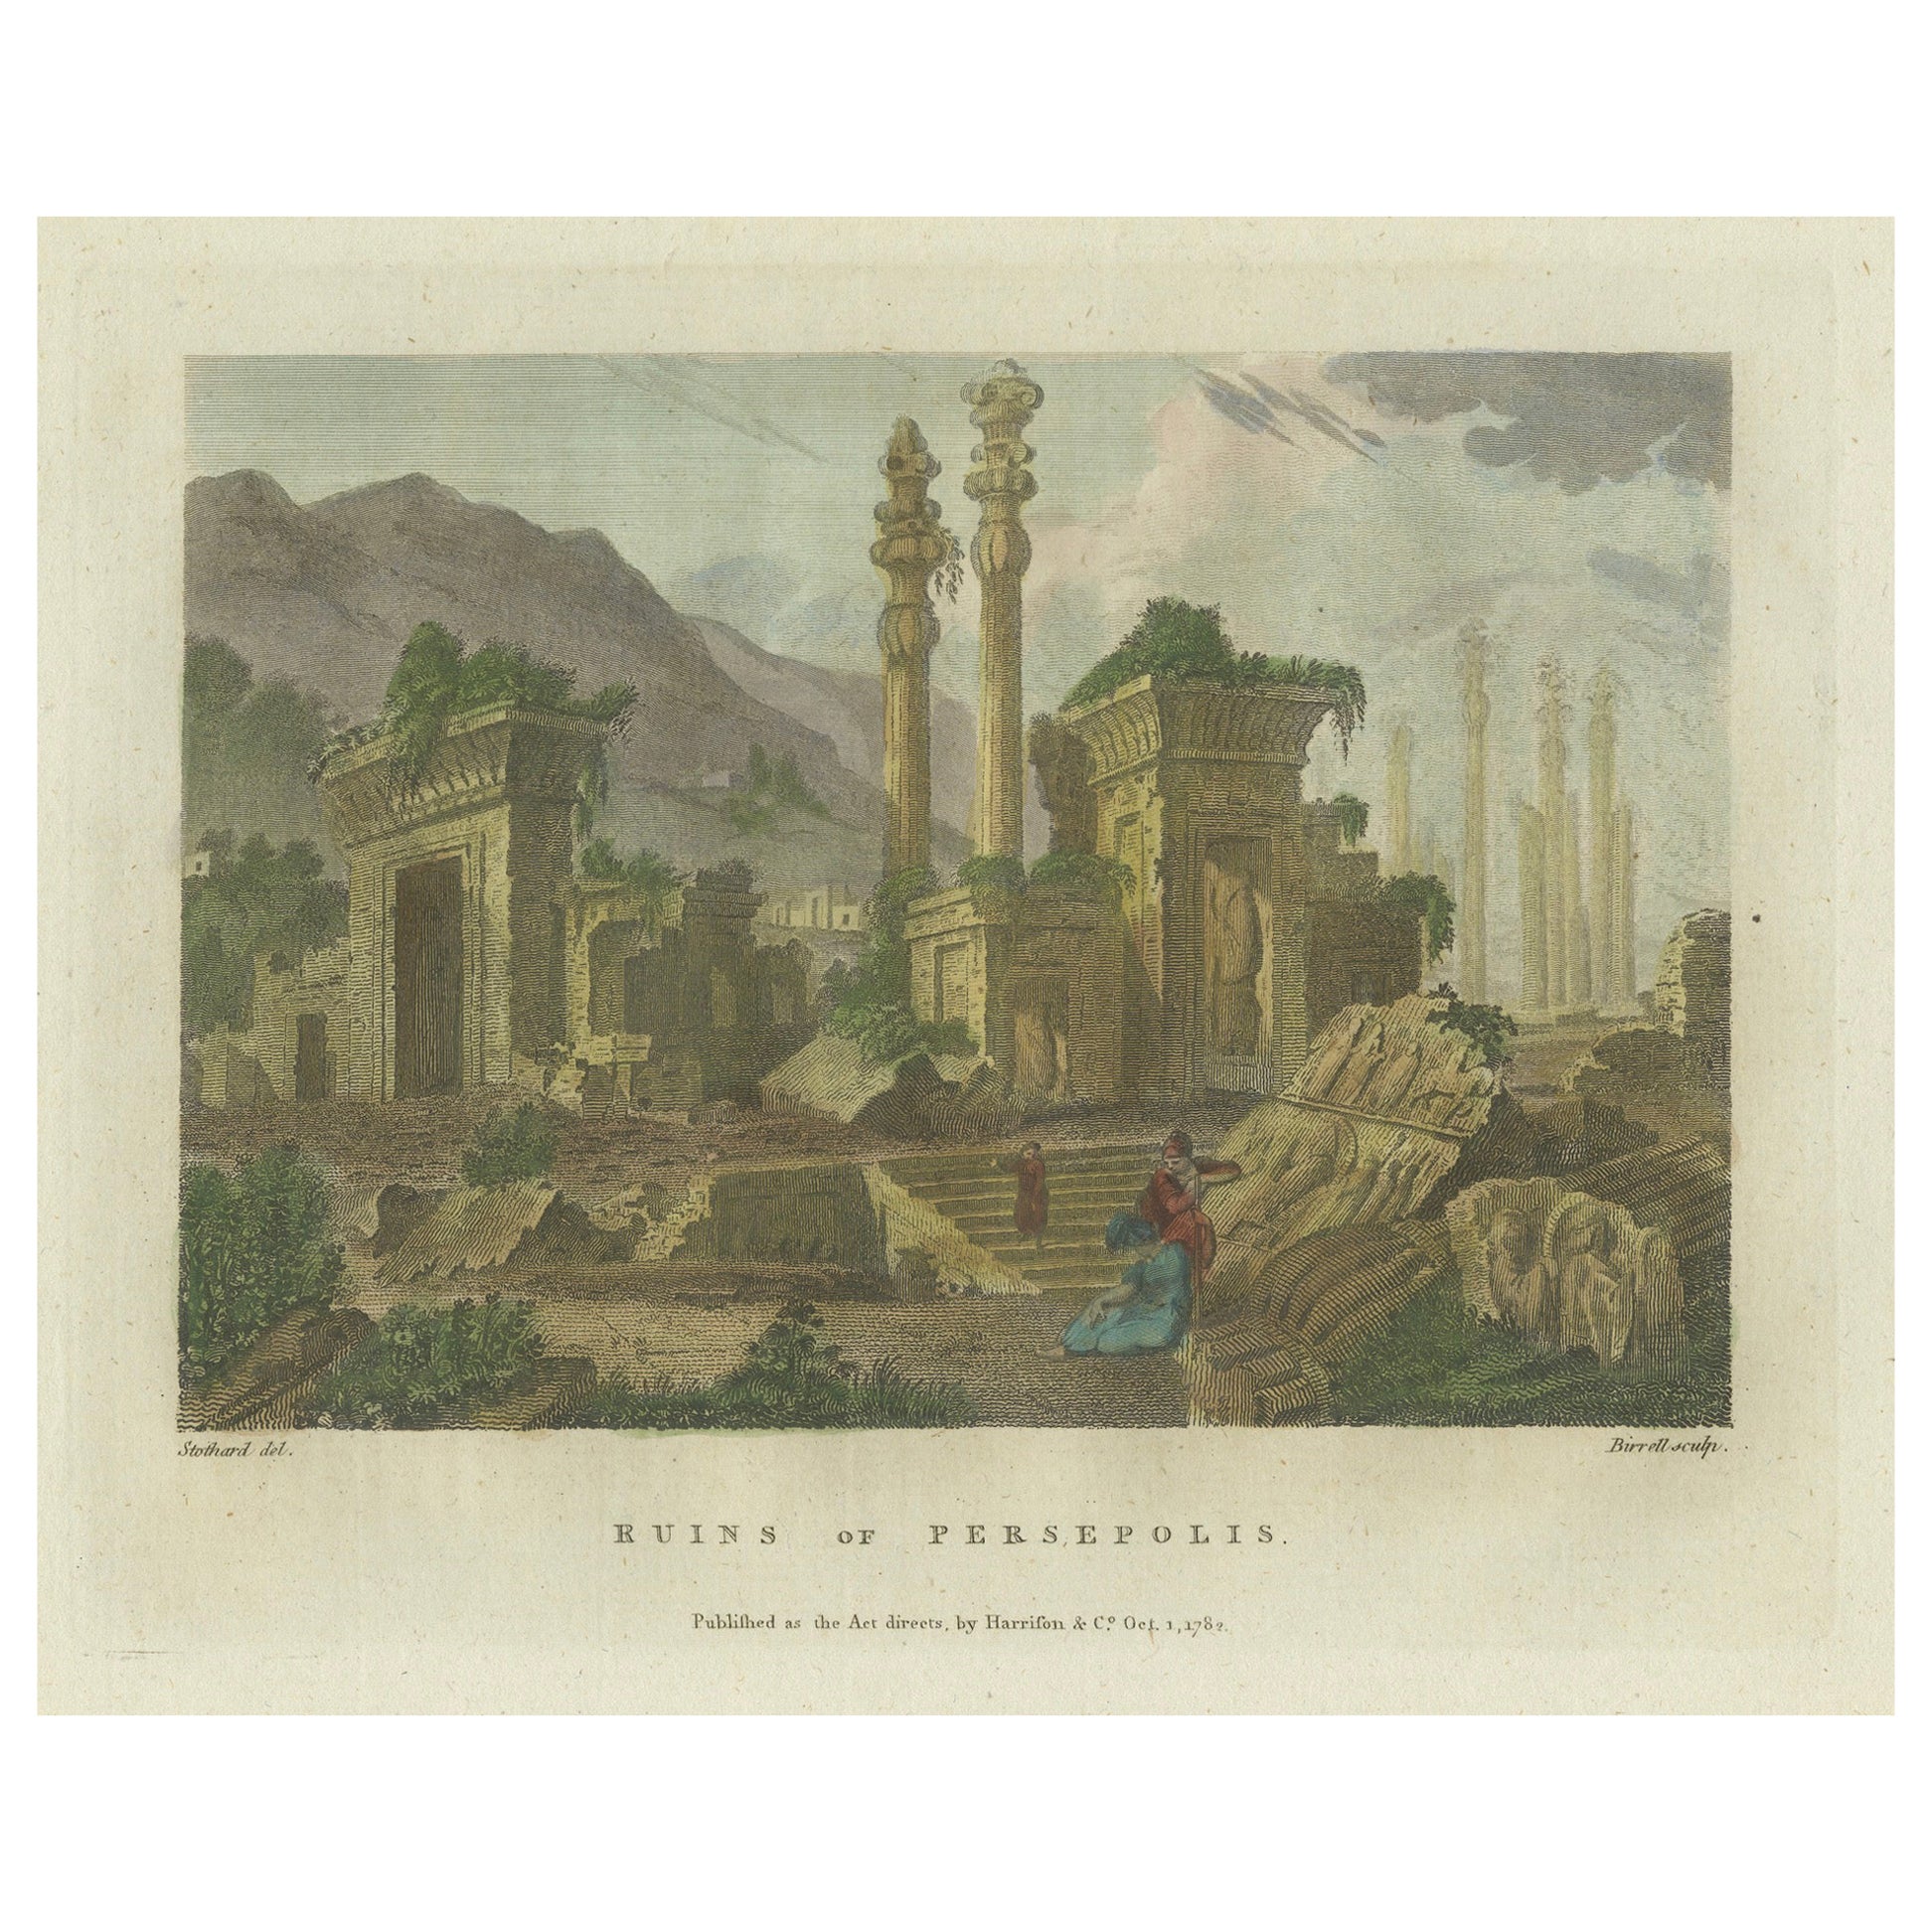 Farbige Gravur der antiken Ruinen von Persepolis in Persien (Iran), 1782 